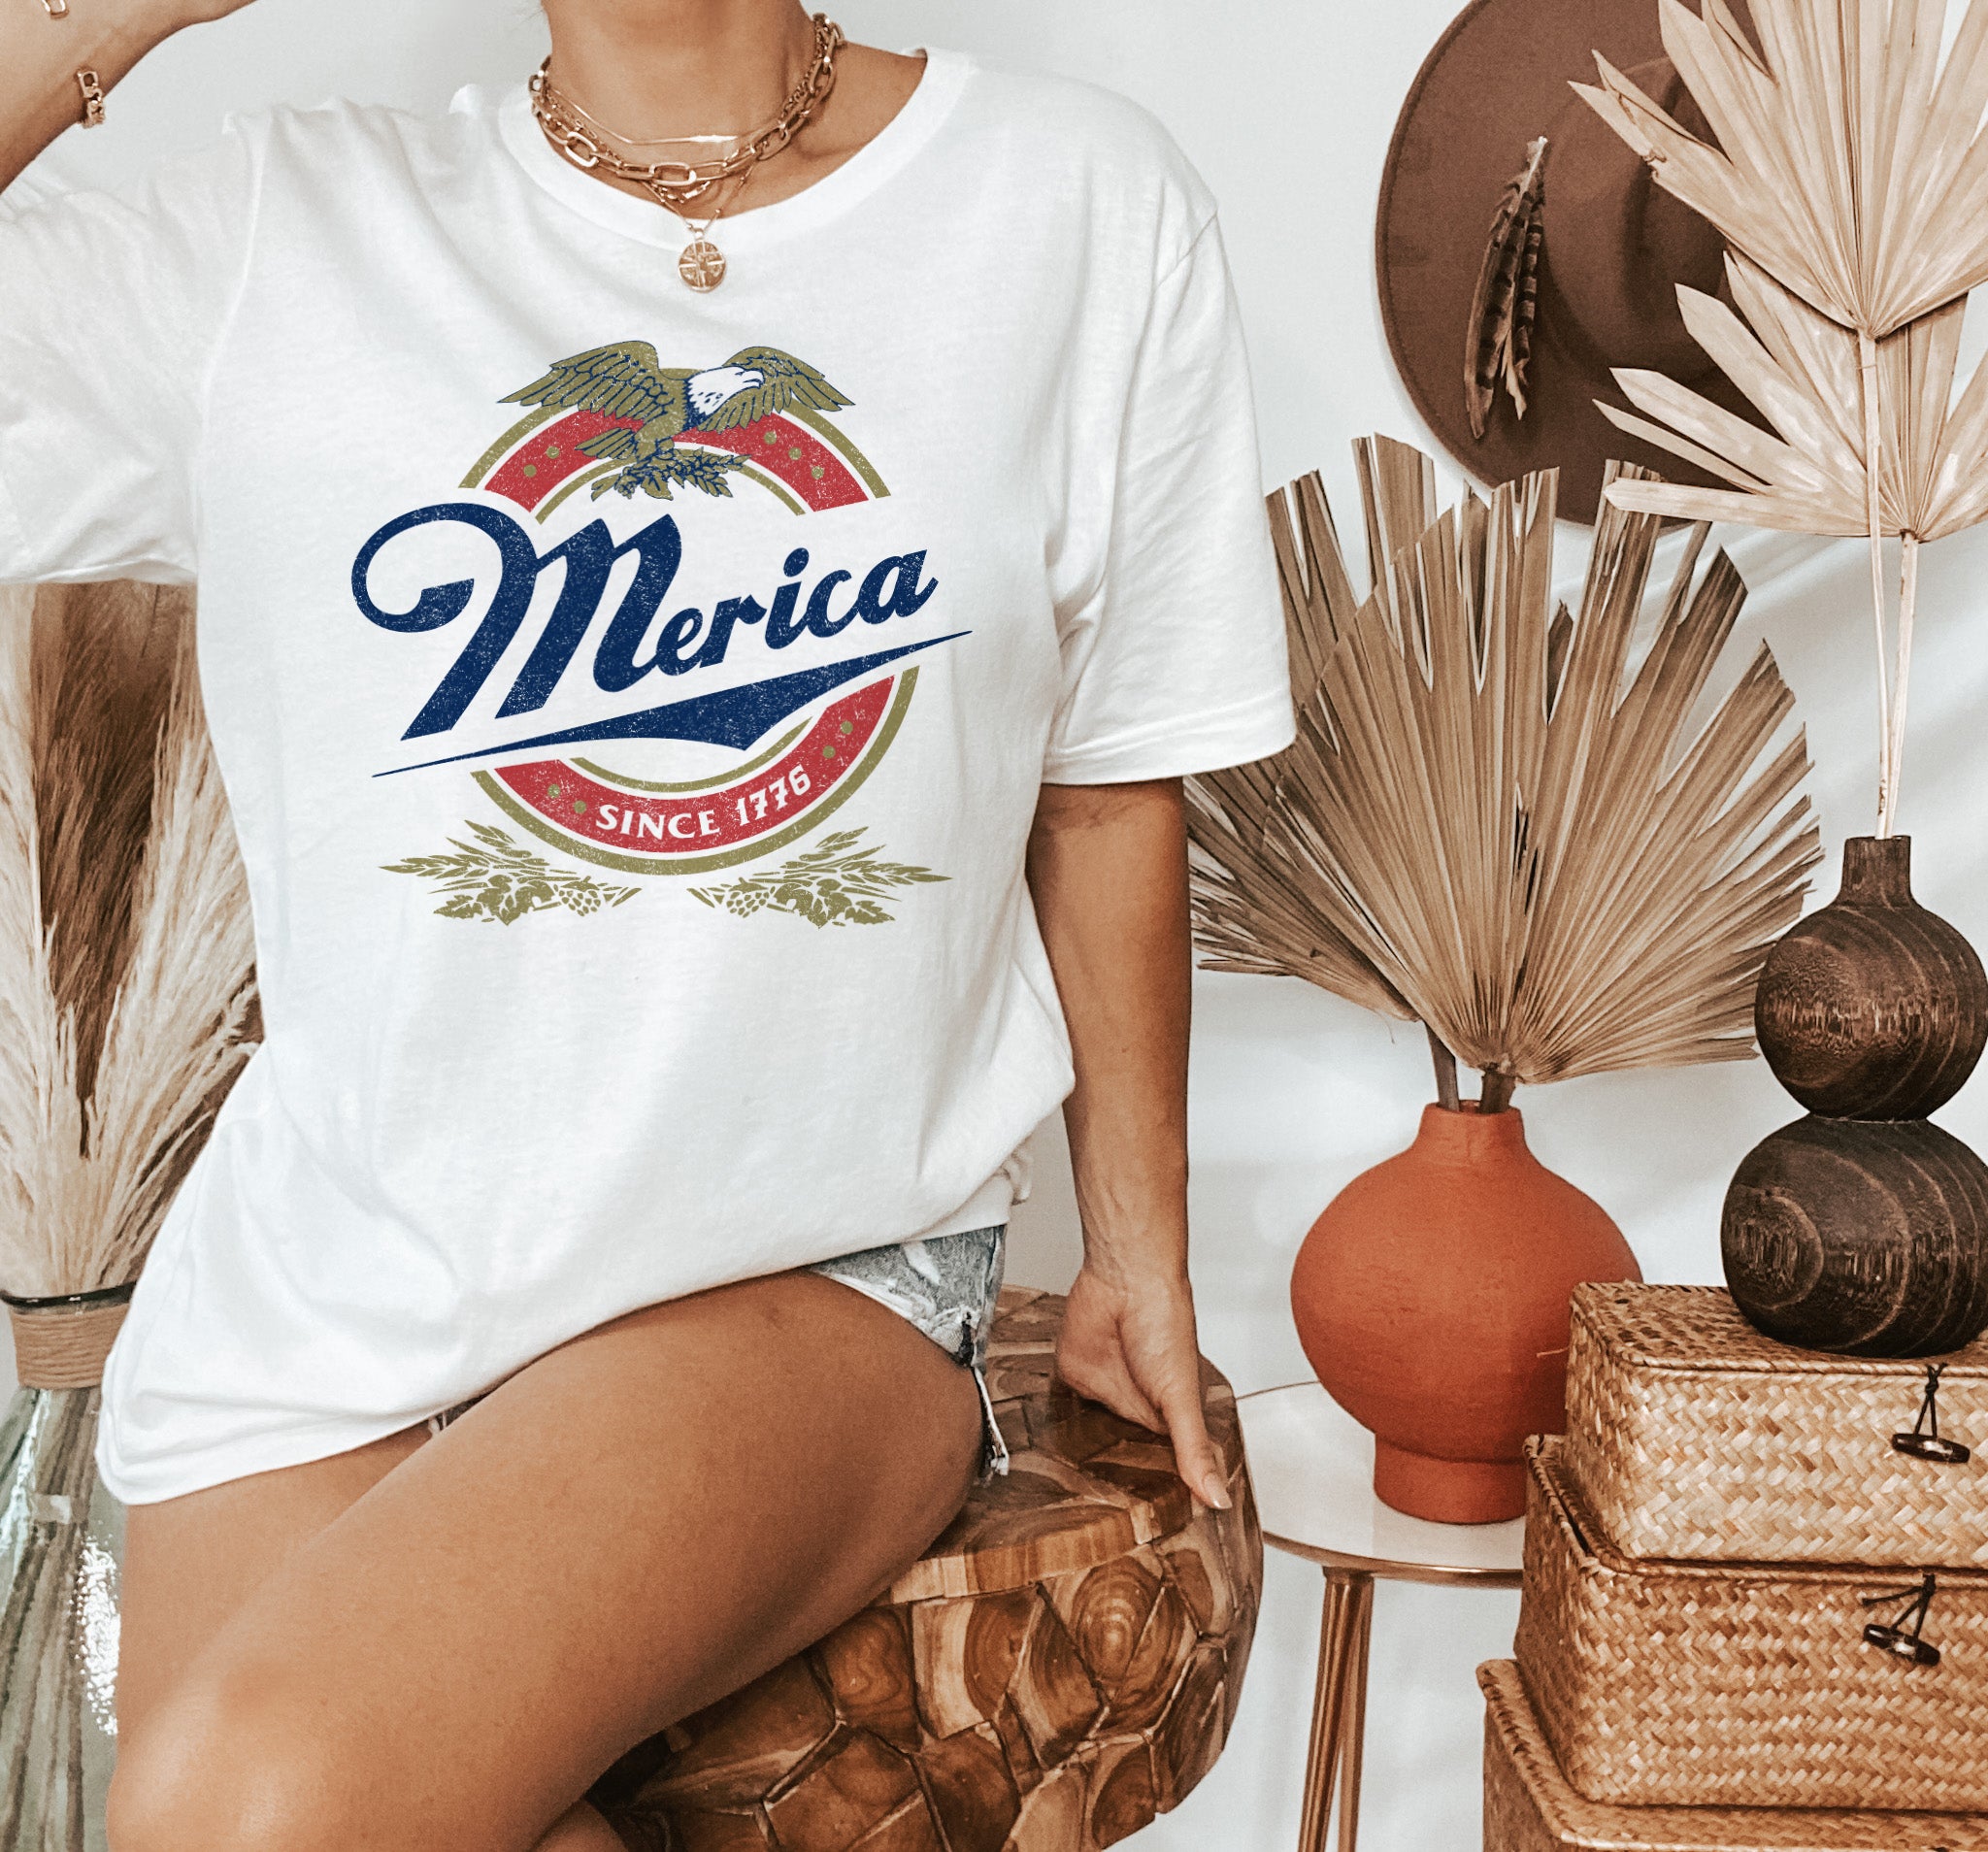 ShopHighCiti Merica Since 1776 Shirt - Miller Lite Beer Shirt - 4th of July T-Shirt - HighCiti M / White